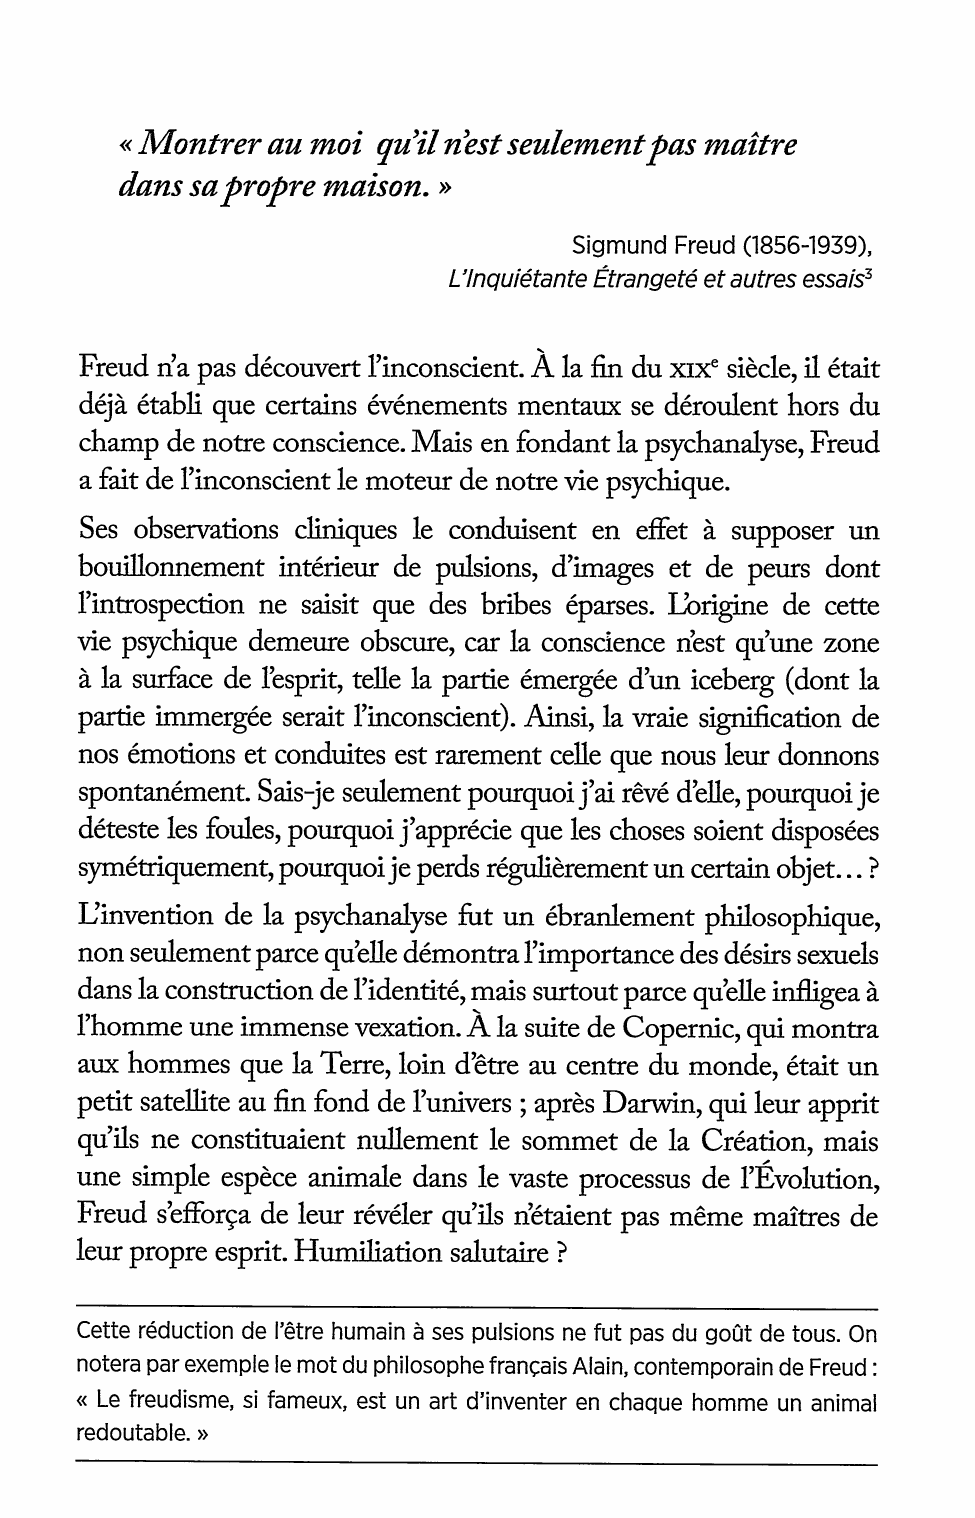 Prévisualisation du document « La recherche psychologique [...] se propose de montrer au moi qu'il n'est seulement pas maître dans sa propre maison ». Freud, Introduction à la psychanalyse, 1917. Commentez cette citation.